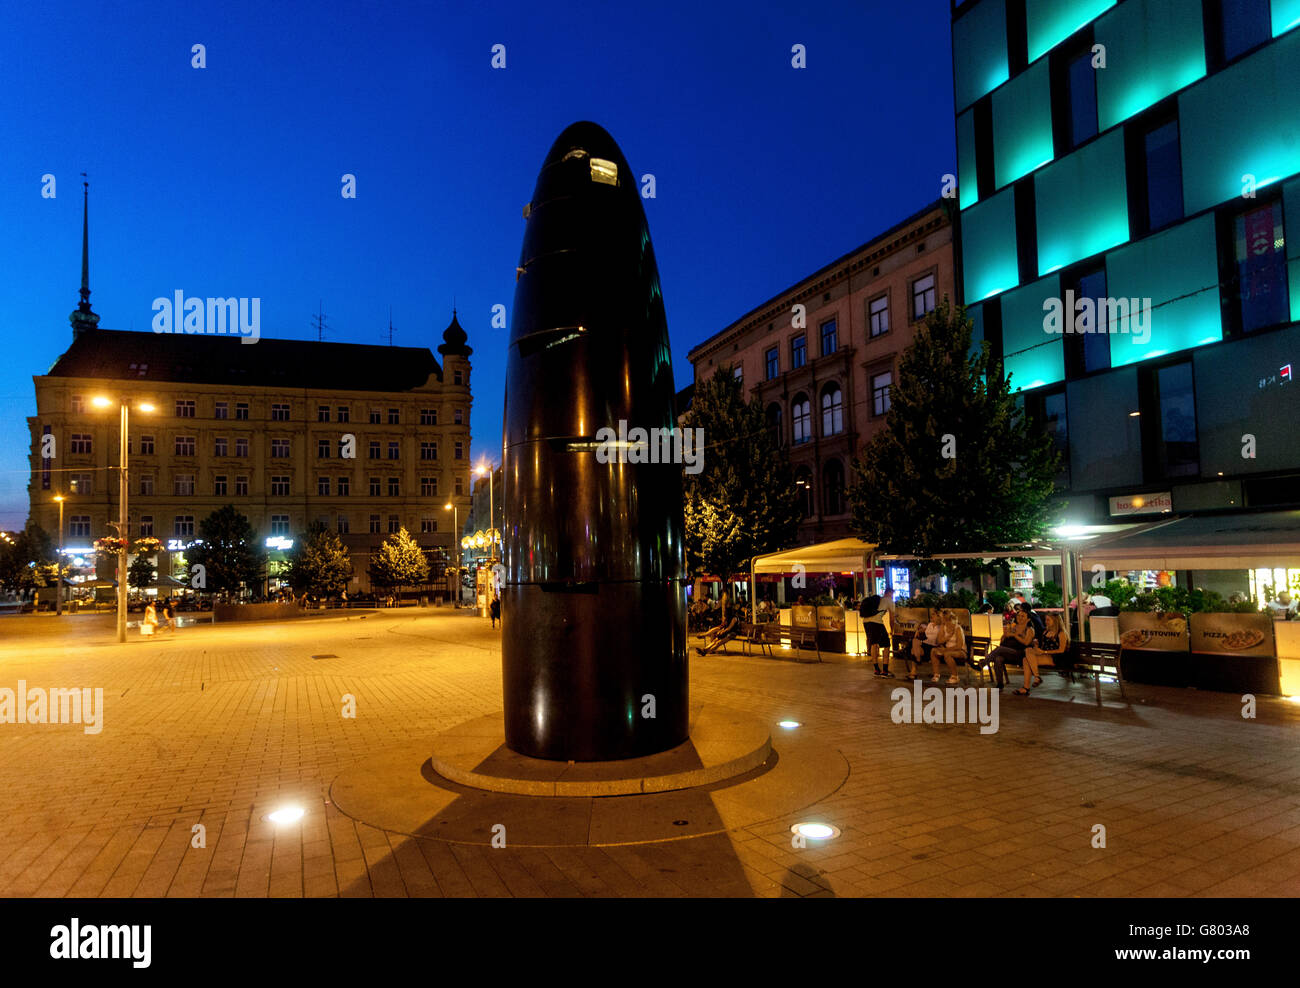 Square Brno horloge astronomique sur Namesti Svobody Brno Freedom Square, centre-ville au crépuscule Brno République tchèque Banque D'Images